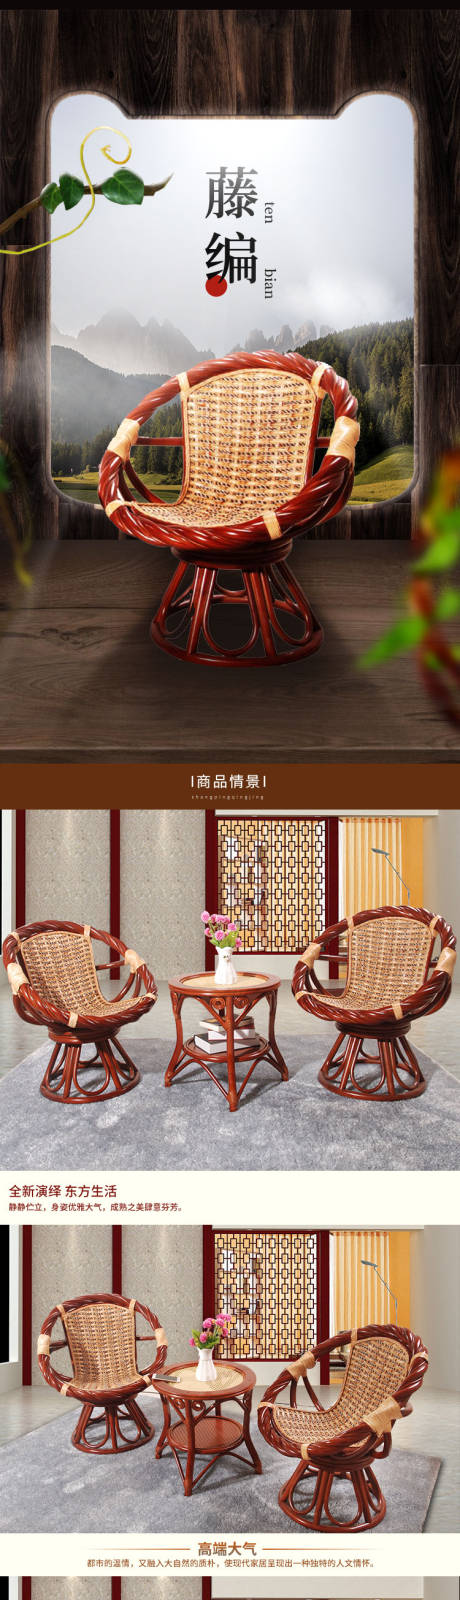 复古中国风家具藤椅电商详情页